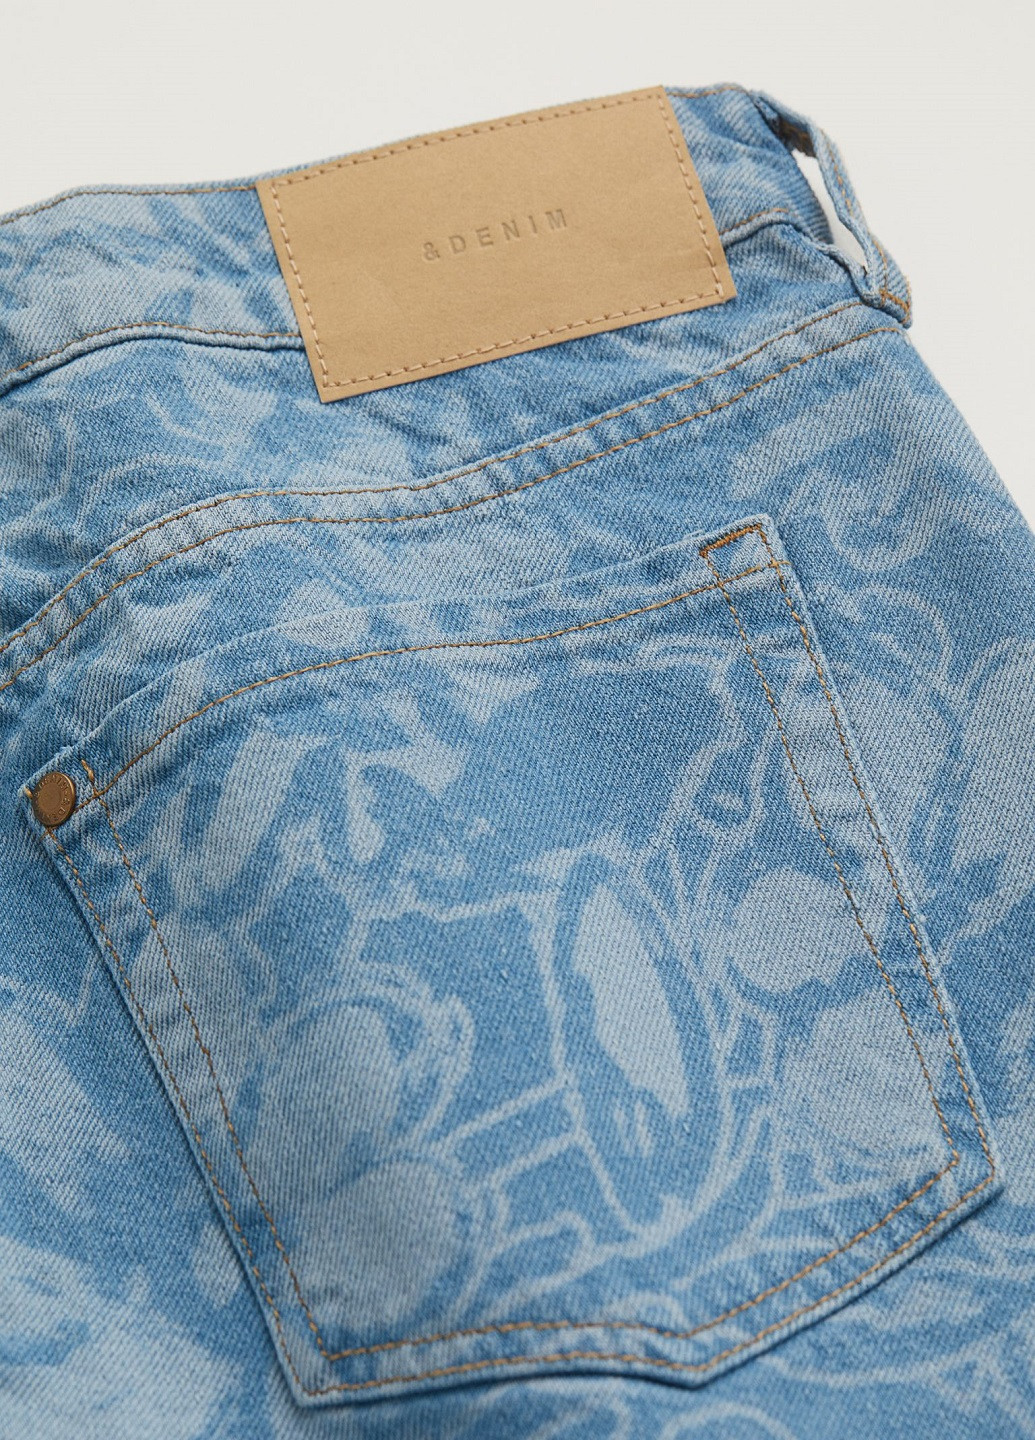 Синяя джинсовая цветочной расцветки юбка H&M